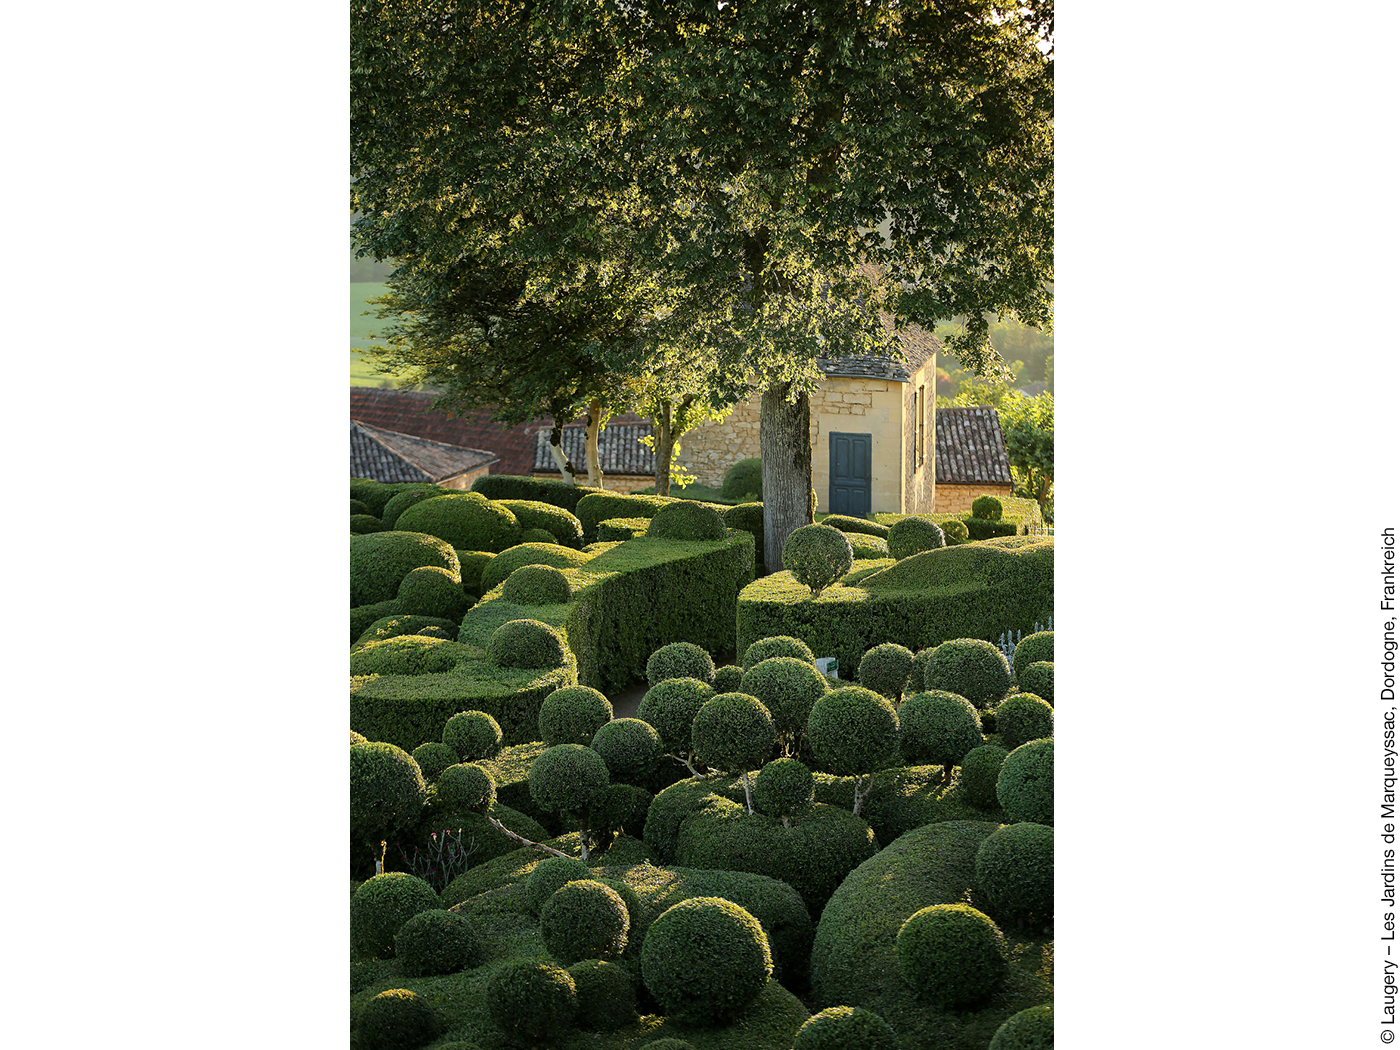 Garten mit Hecken und kugelförmigen Bäumchen